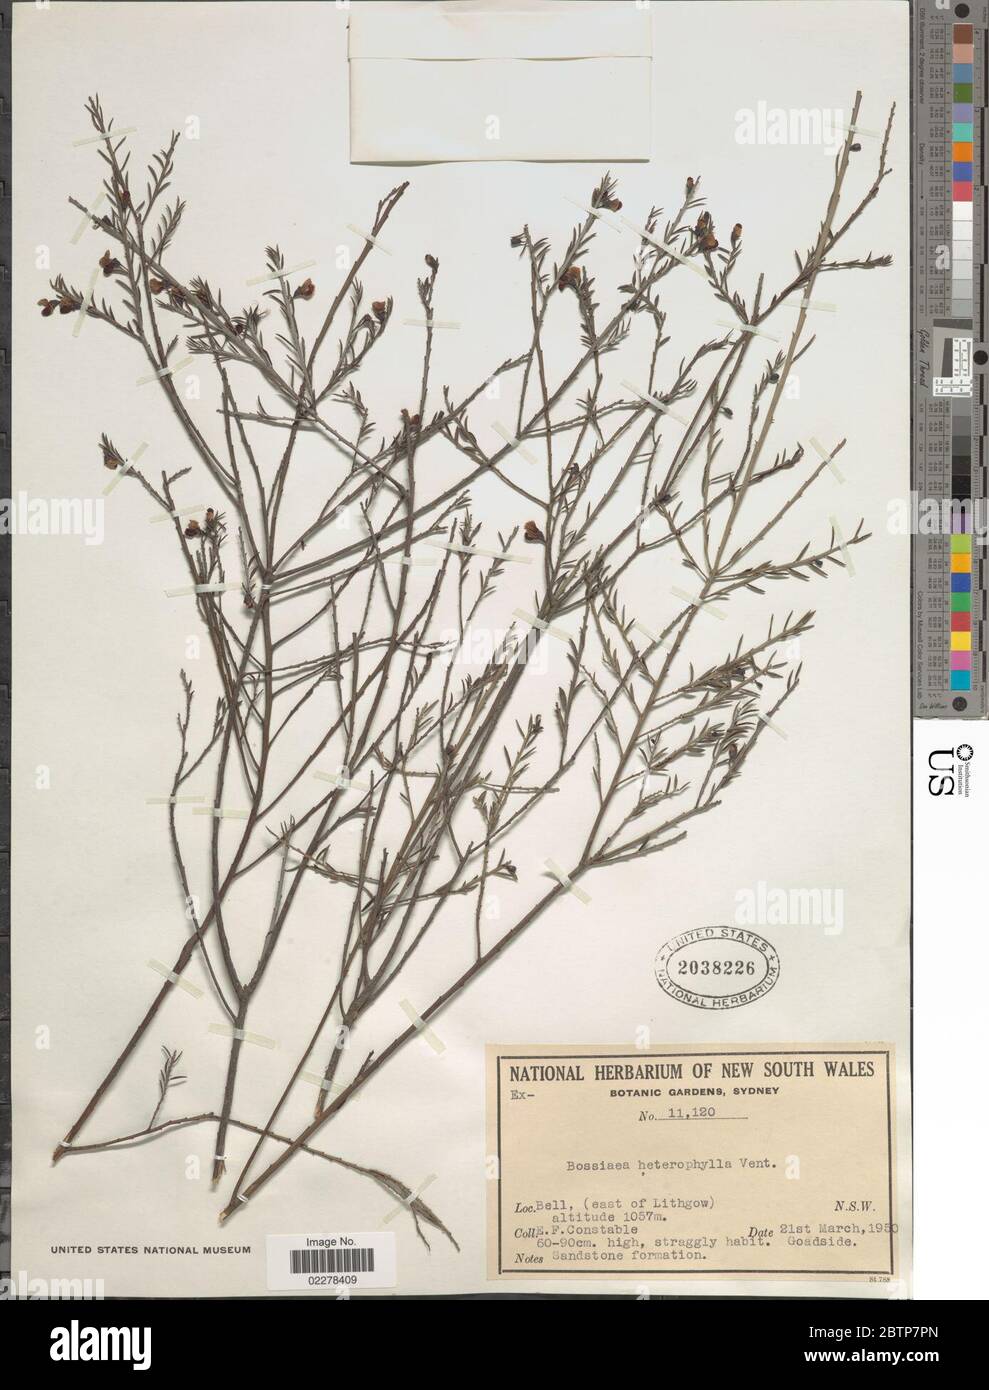 Bossiaea heterophylla Vent. Stock Photo